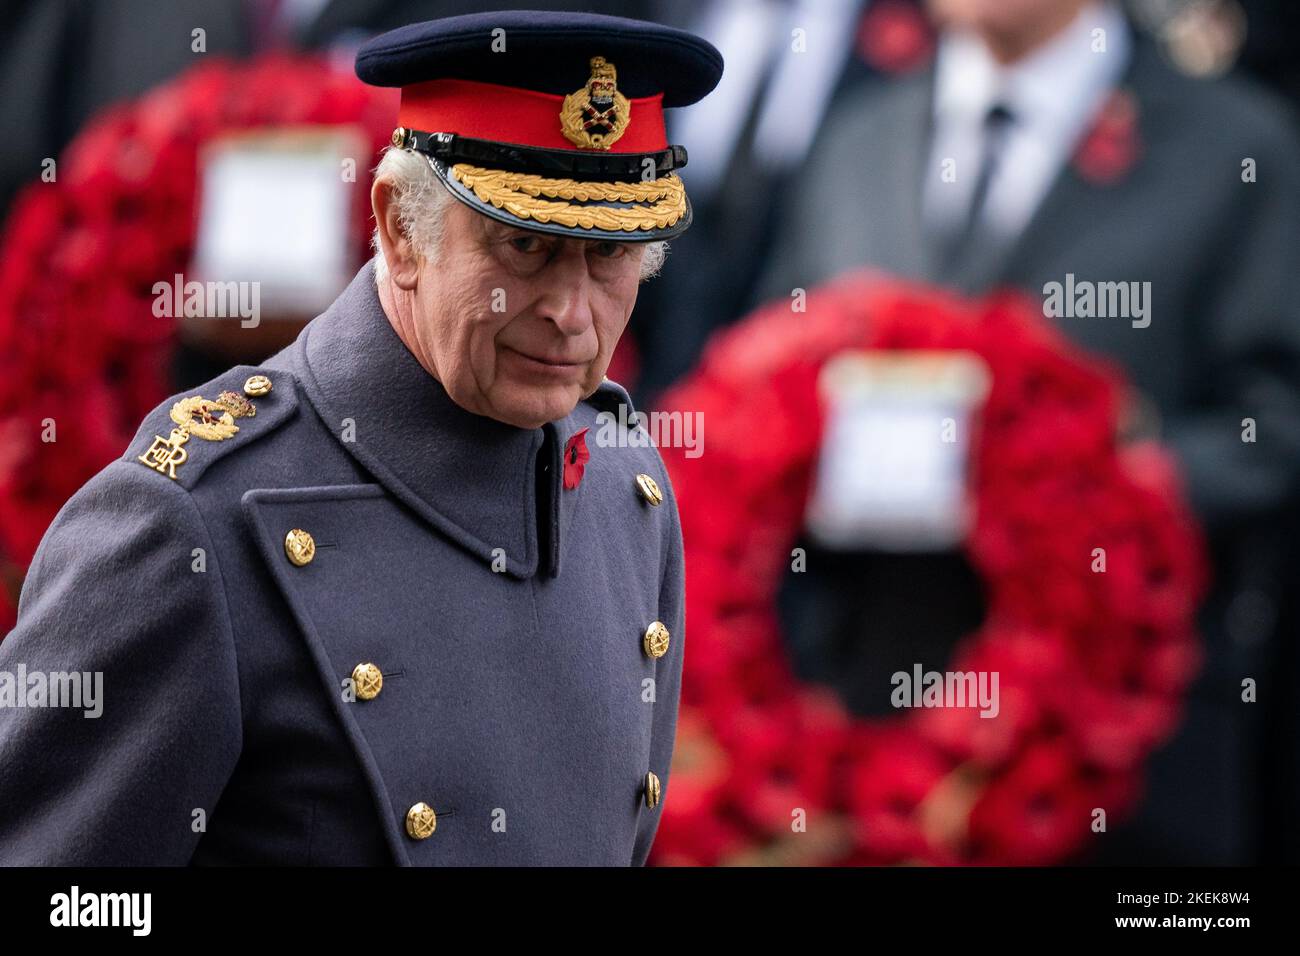 Le roi Charles III pendant le service du dimanche du souvenir au Cenotaph à Londres. Date de la photo: Dimanche 13 novembre 2022. Banque D'Images